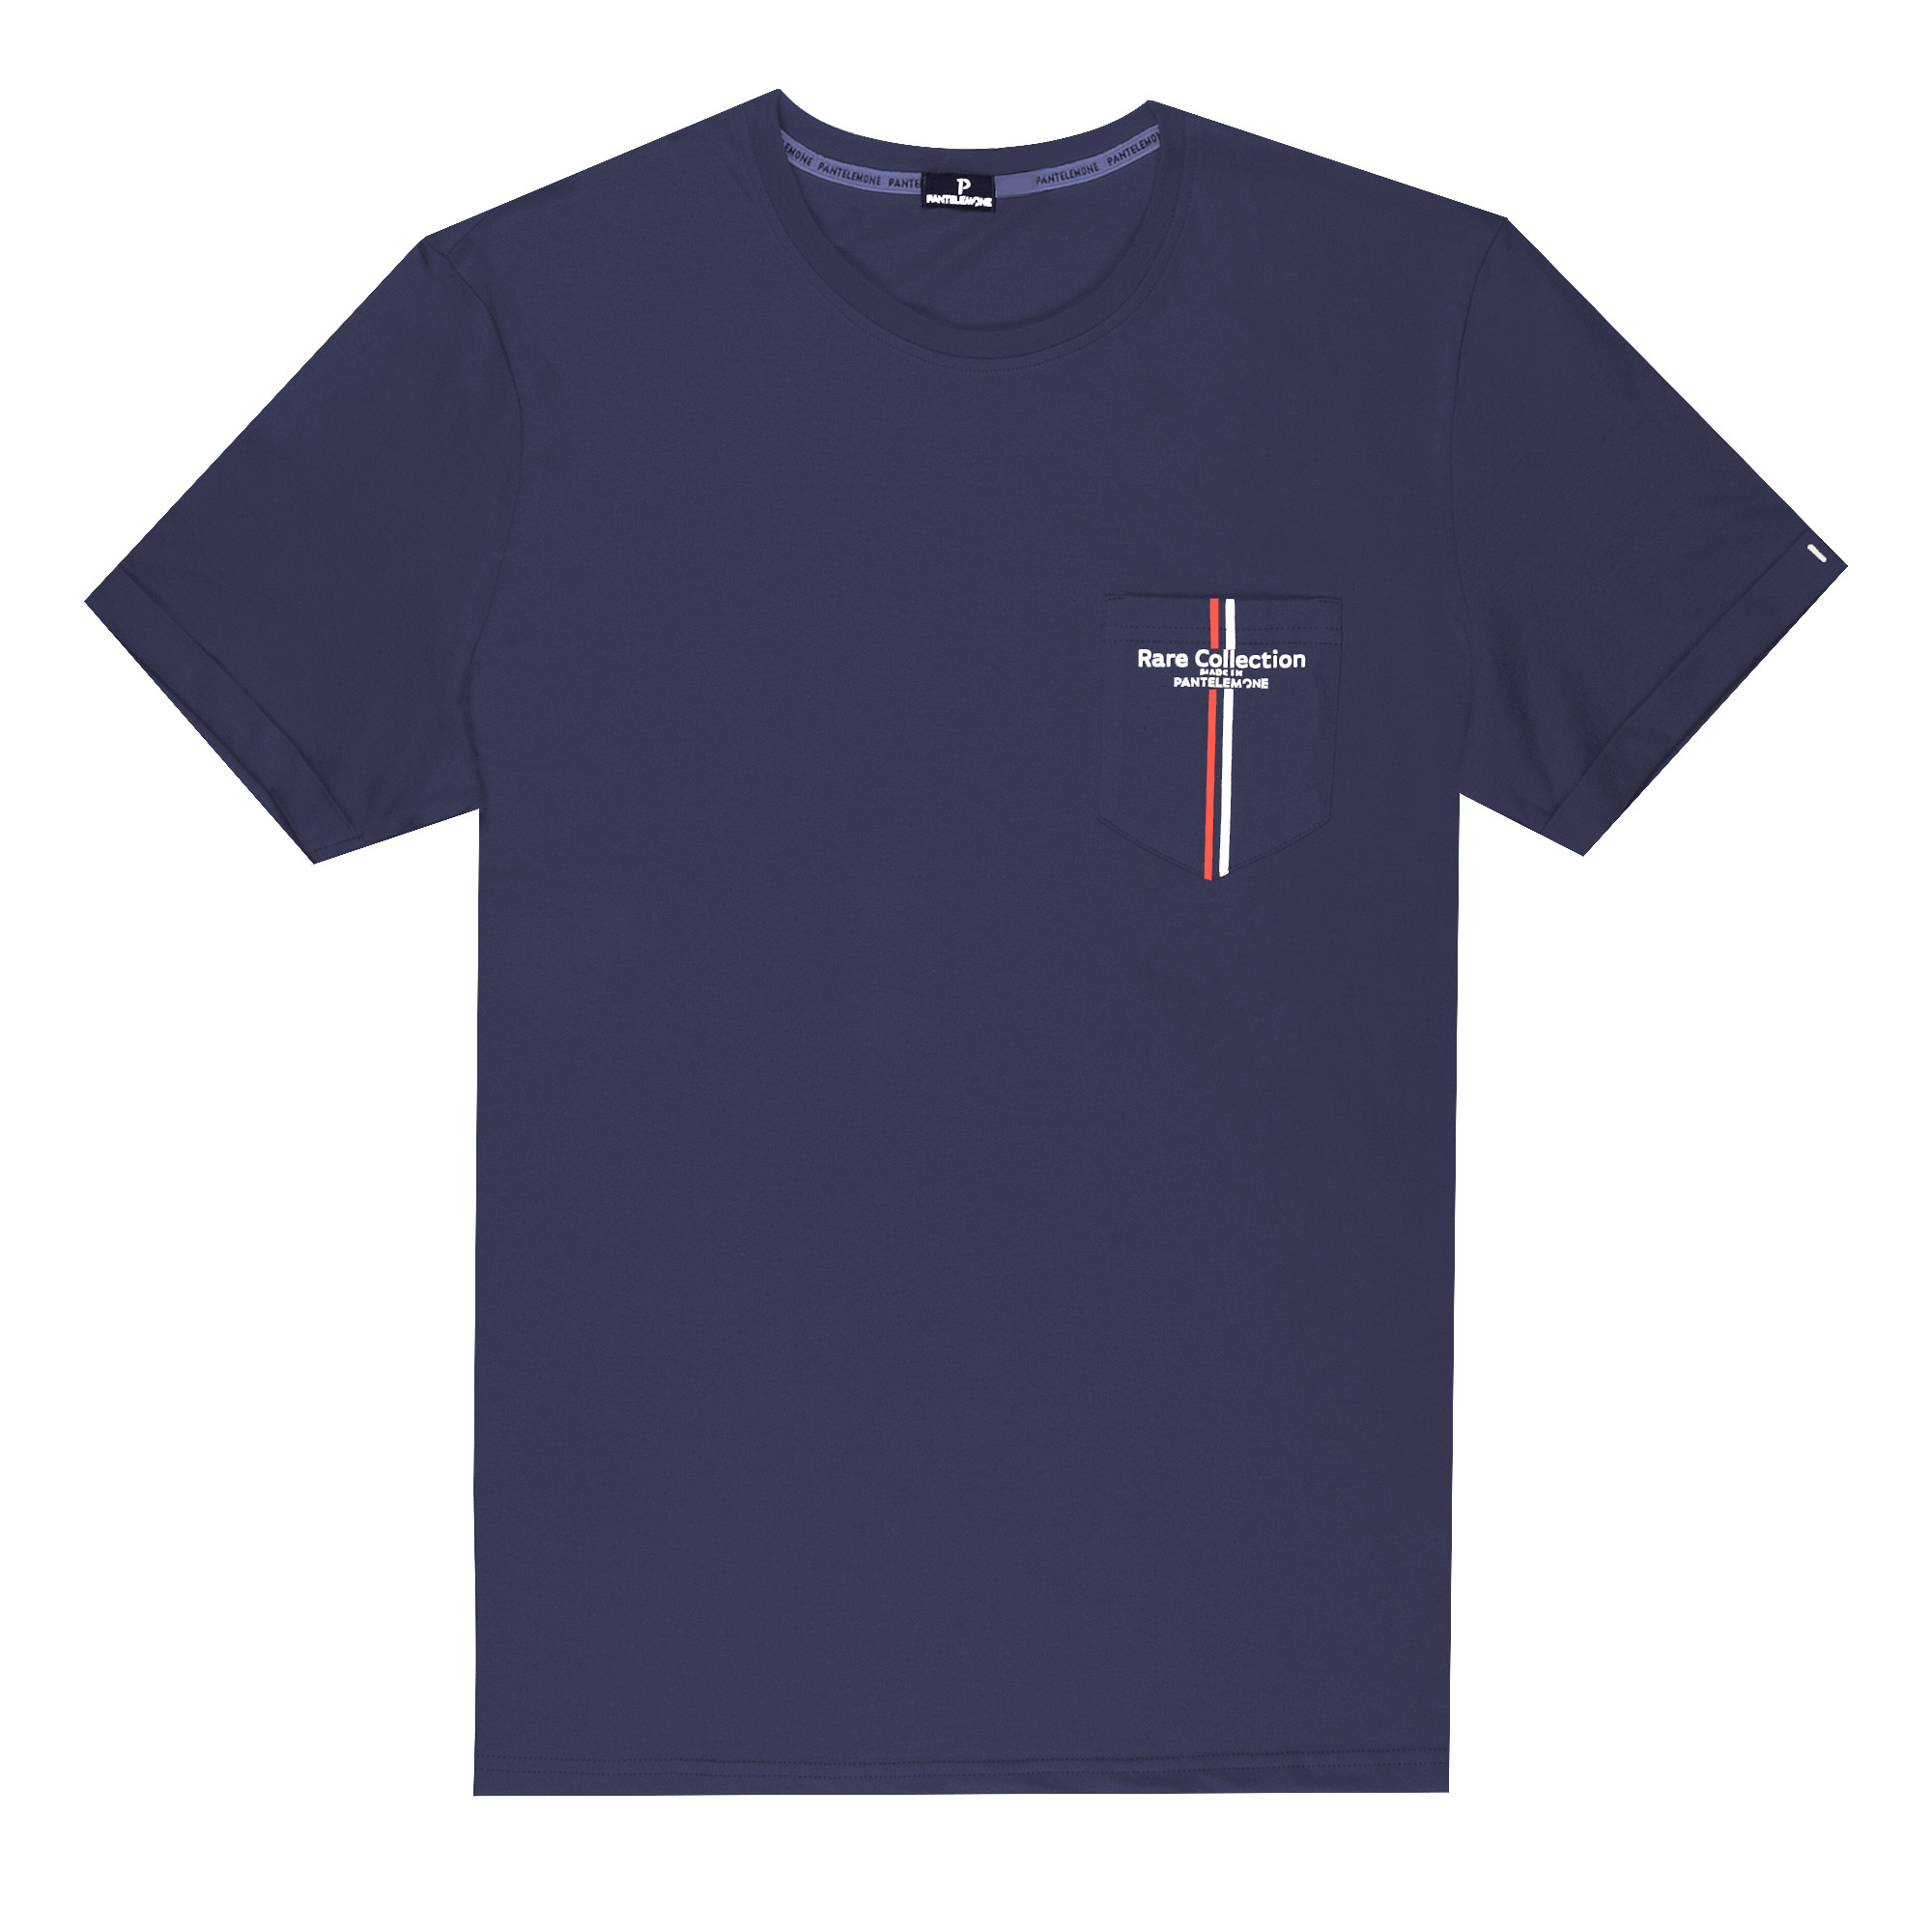 Мужская футболка Pantelemone MF-898 темно-синяя 48, цвет темно-синий, размер 48 - фото 1